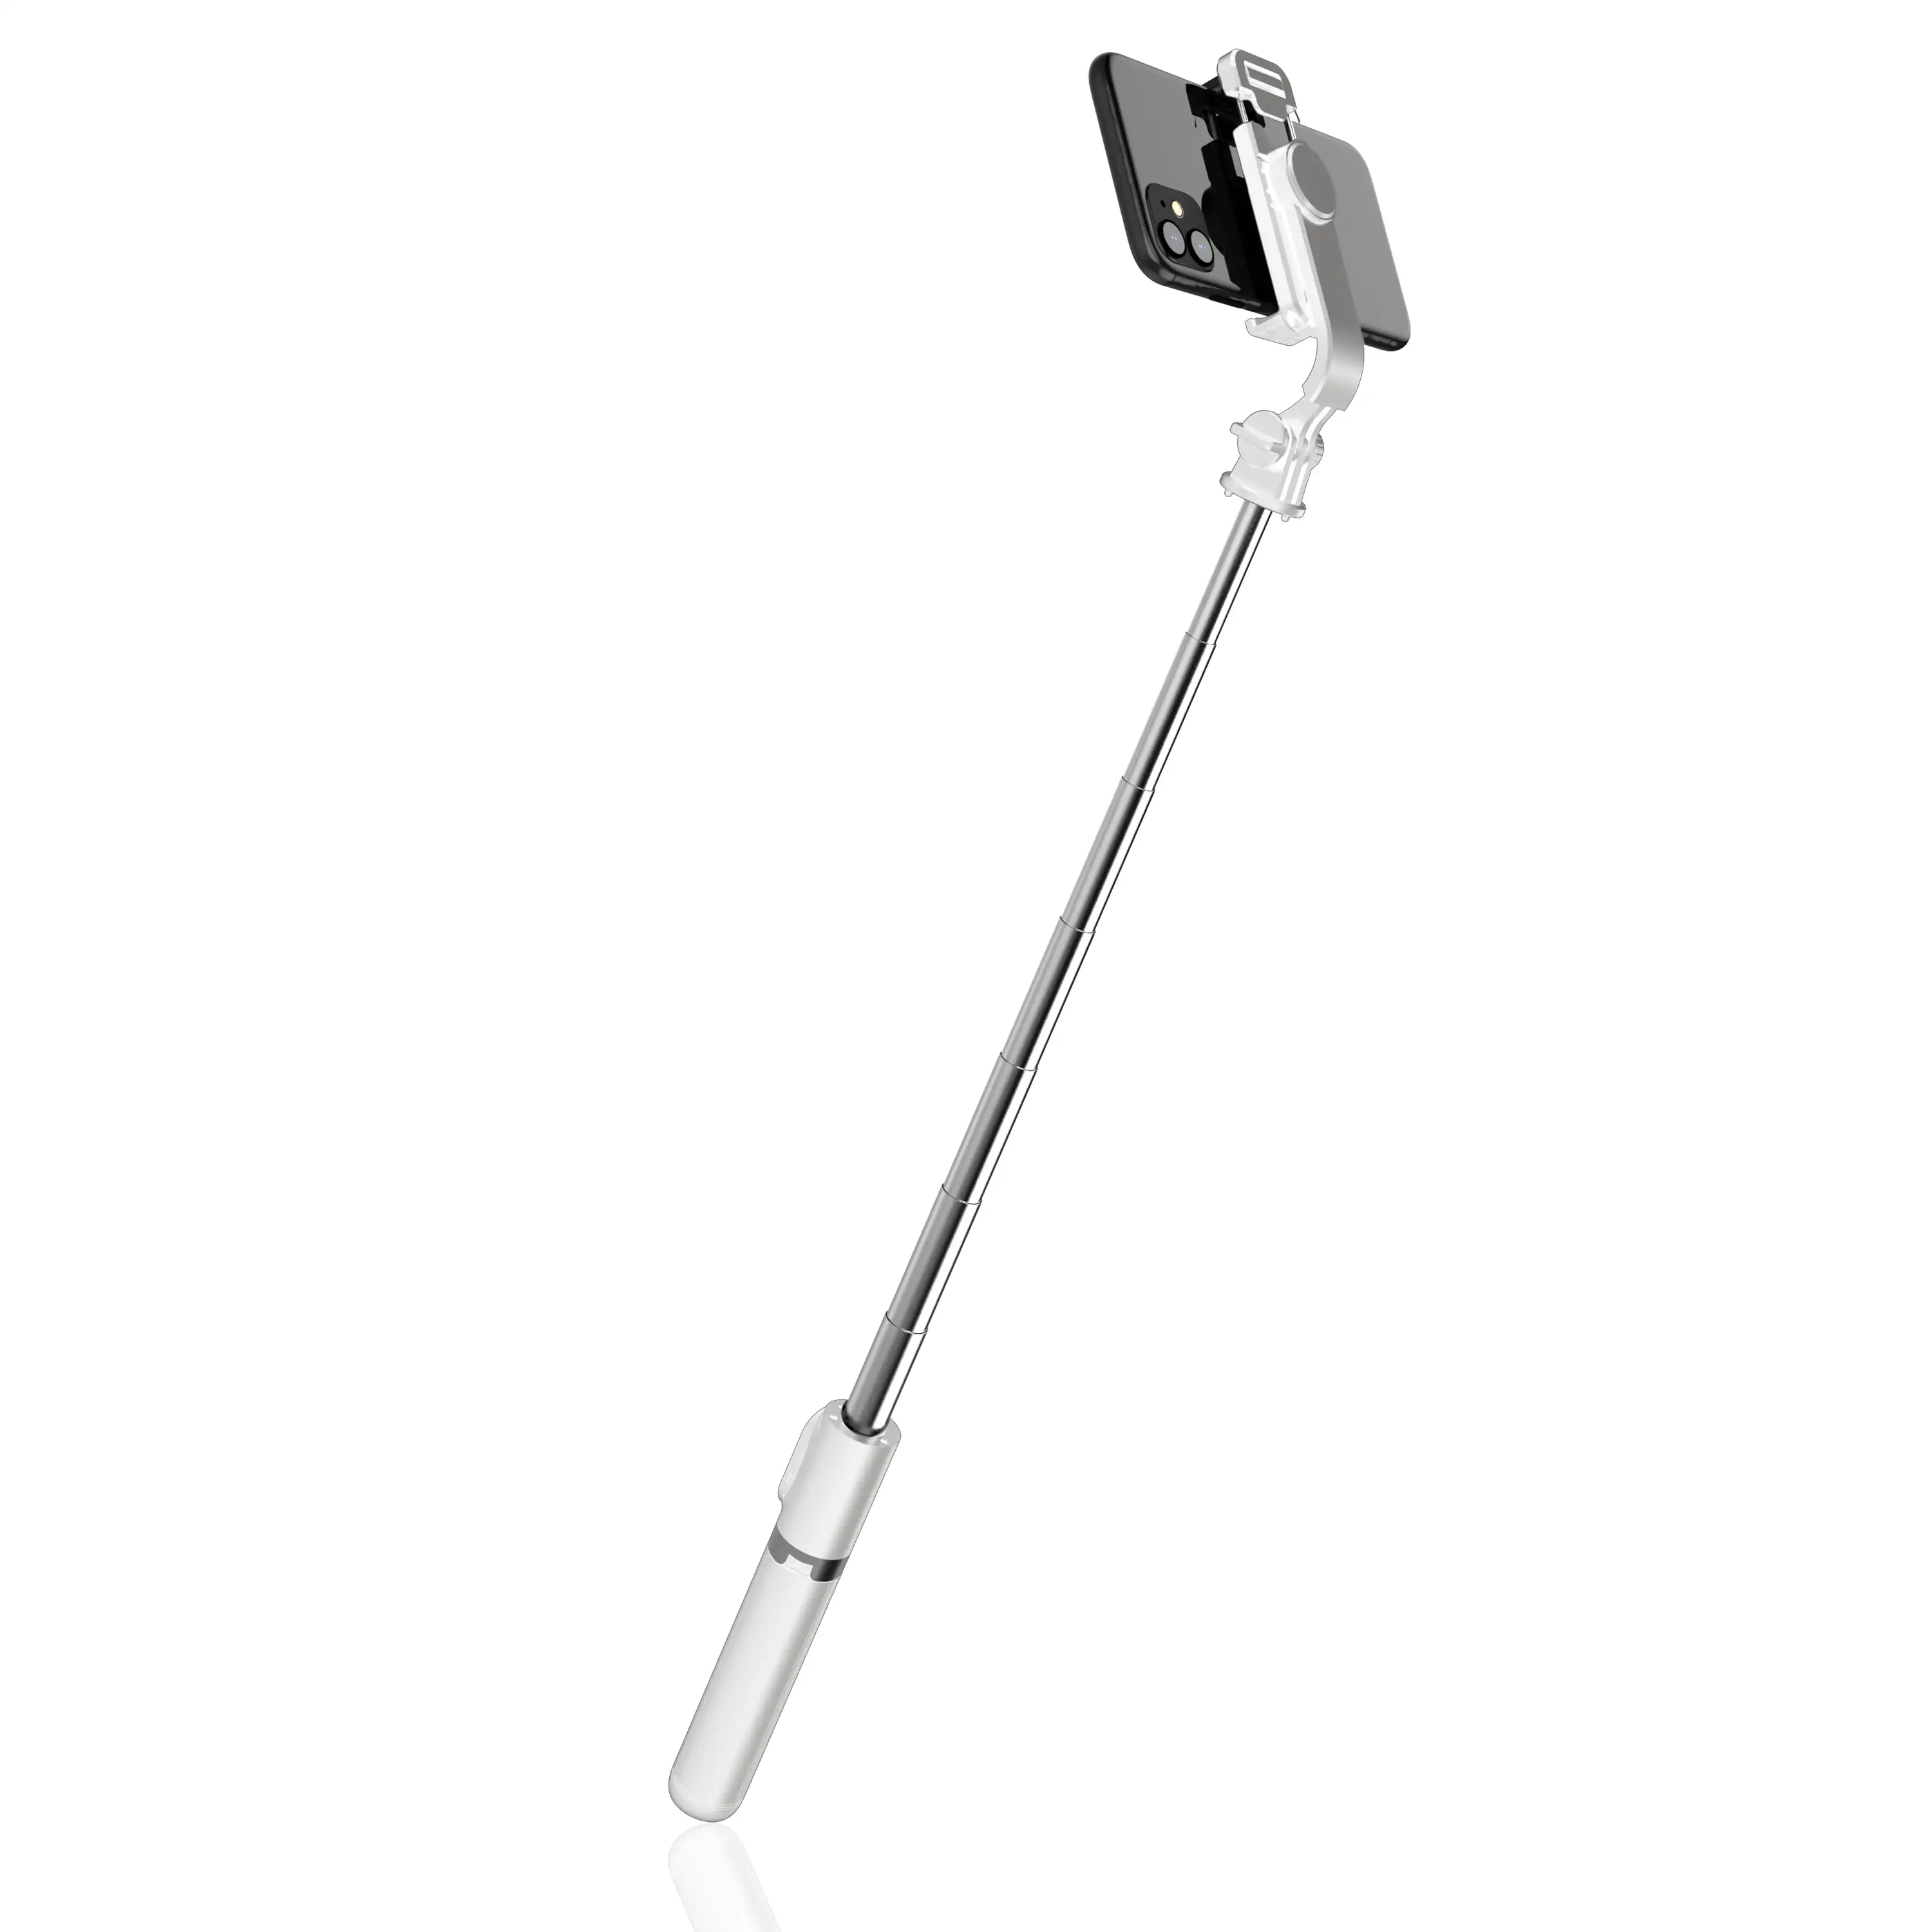 Palo selfie stick con trípode extensible y disparador remoto Bluetooth.